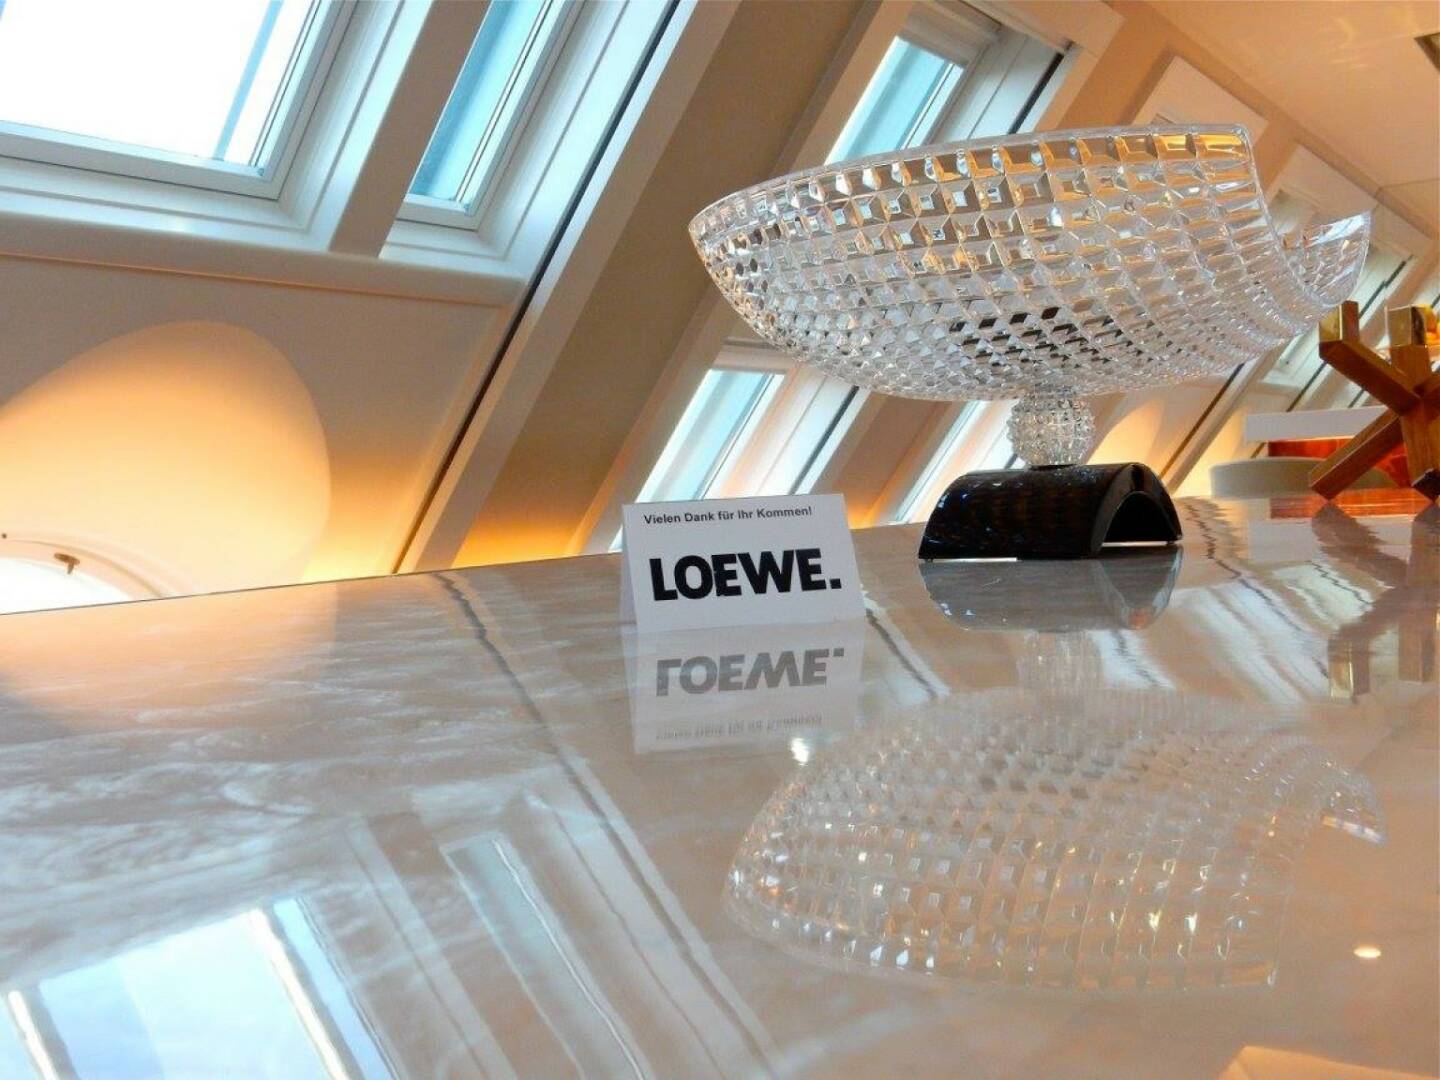 LOEWE-PK im Park Hyatt, Jänner 2016: Mit seiner Premium-Strategie, seinem vielfach ausgezeichneten Design und seiner hochwertig gearbeiteten Produktpalette, die nicht nur TV-Geräte, sondern auch Komplett-Lösungen im Audio- und Home-Entertainment-Bereich umfasst, ist LOEWE dabei, den Markt (zurück) zu erobern. 